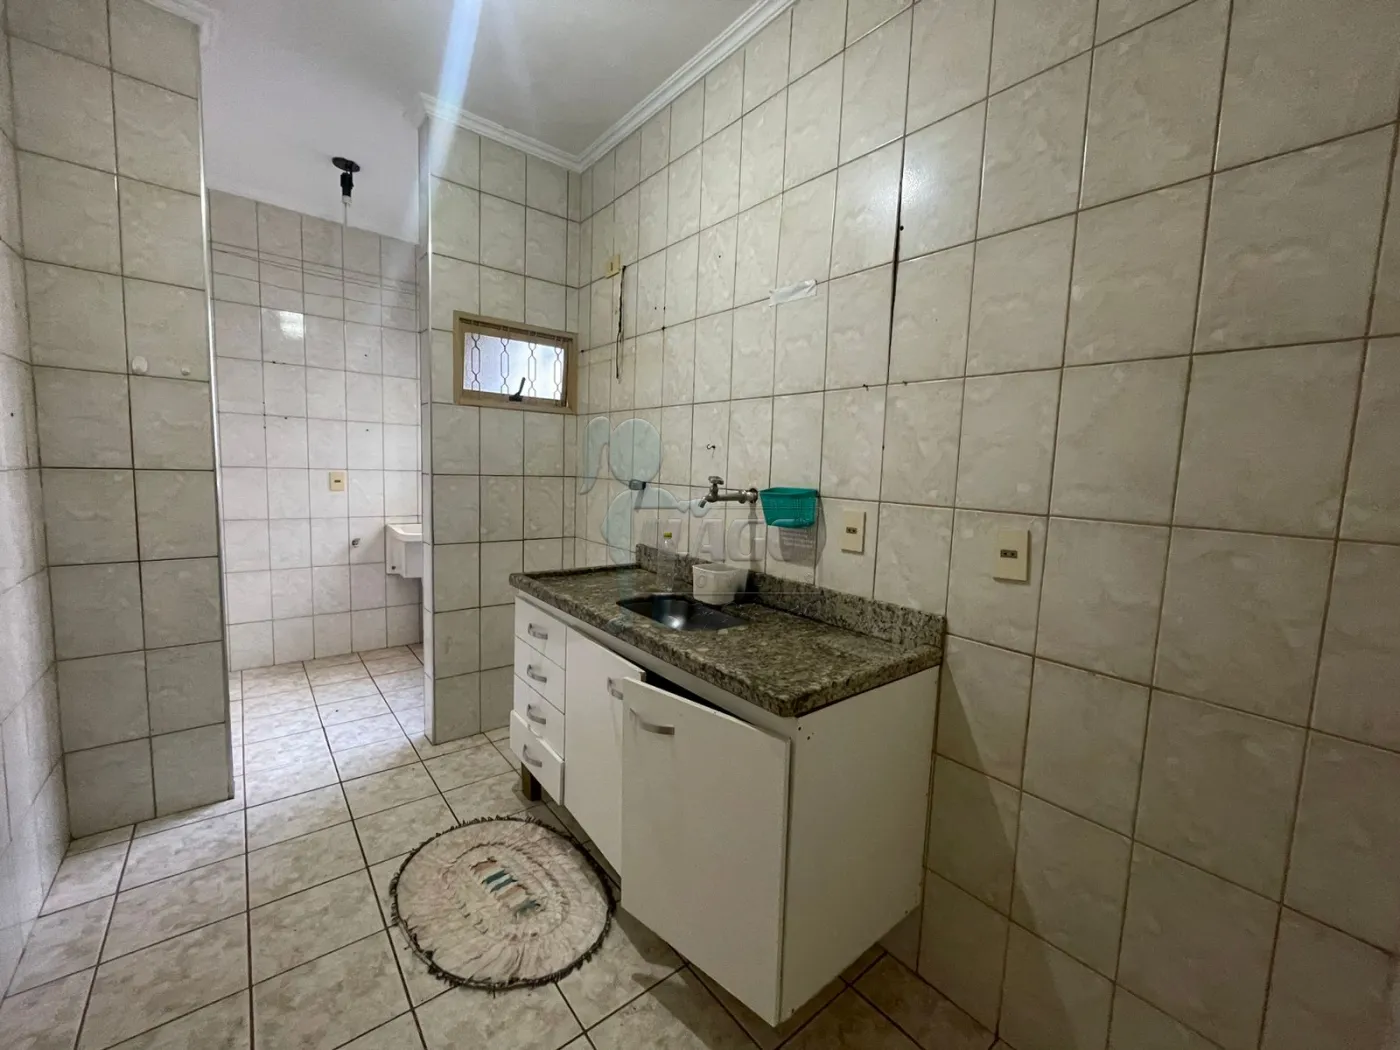 Comprar Apartamento / Padrão em Ribeirão Preto R$ 300.000,00 - Foto 4